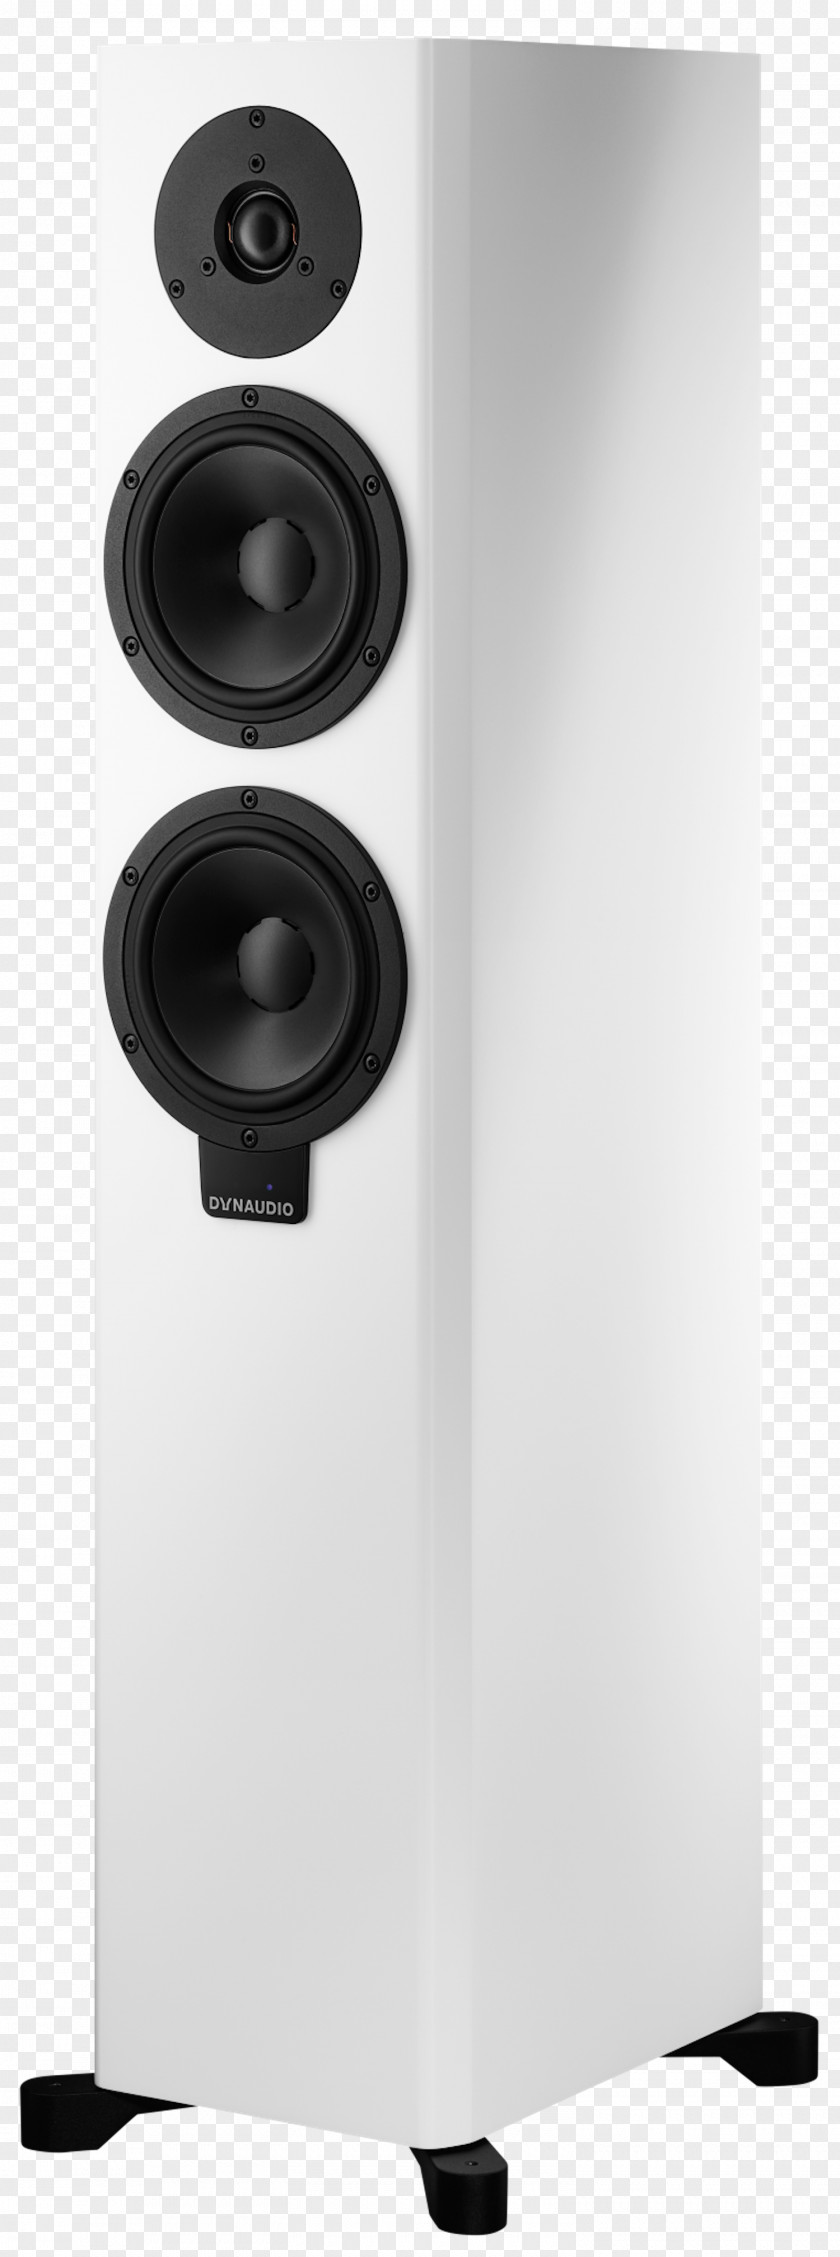 Dynaudio Xeo 4 Loudspeaker DYNAUDIO EMIT M20 MONITOR SPEAKER Focus 20 XD High-performance Powered Stereo Speakers PNG